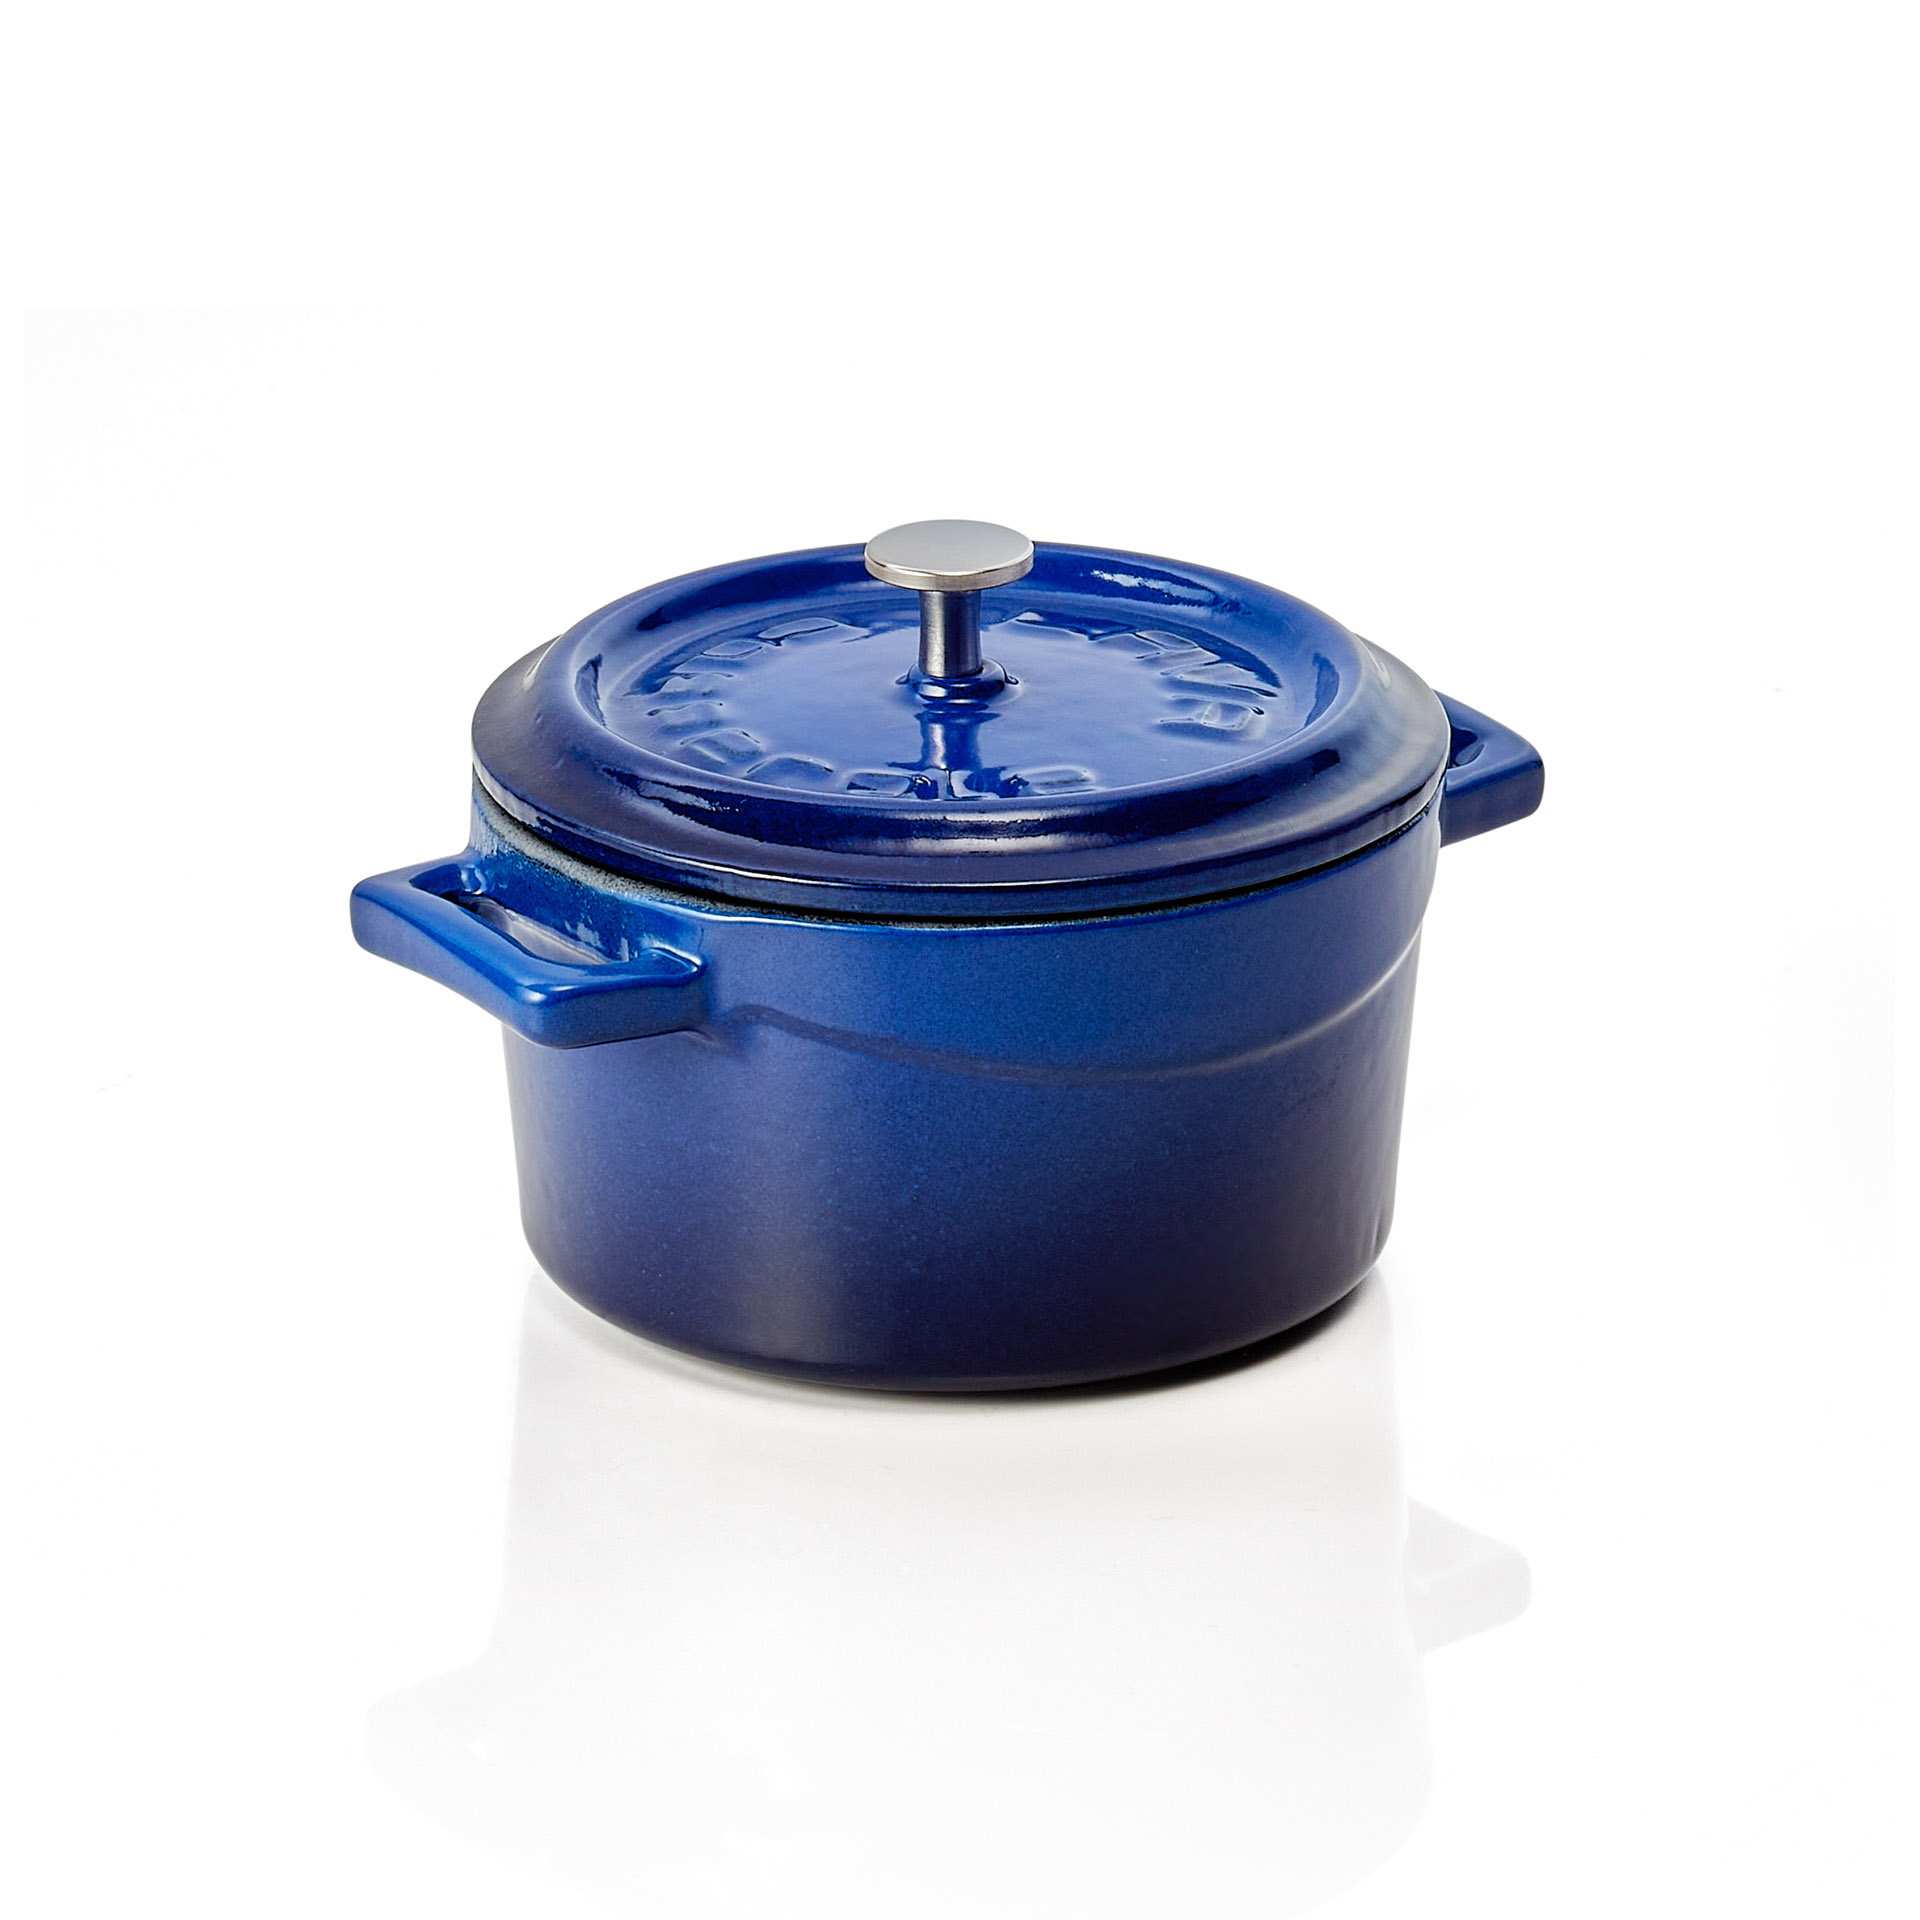 Cocotte - mit angegossenen Seitengriffen - Serie Lava - blau - rund - Höhe 6,0 cm - Ø 11,0 cm - 363002010-A